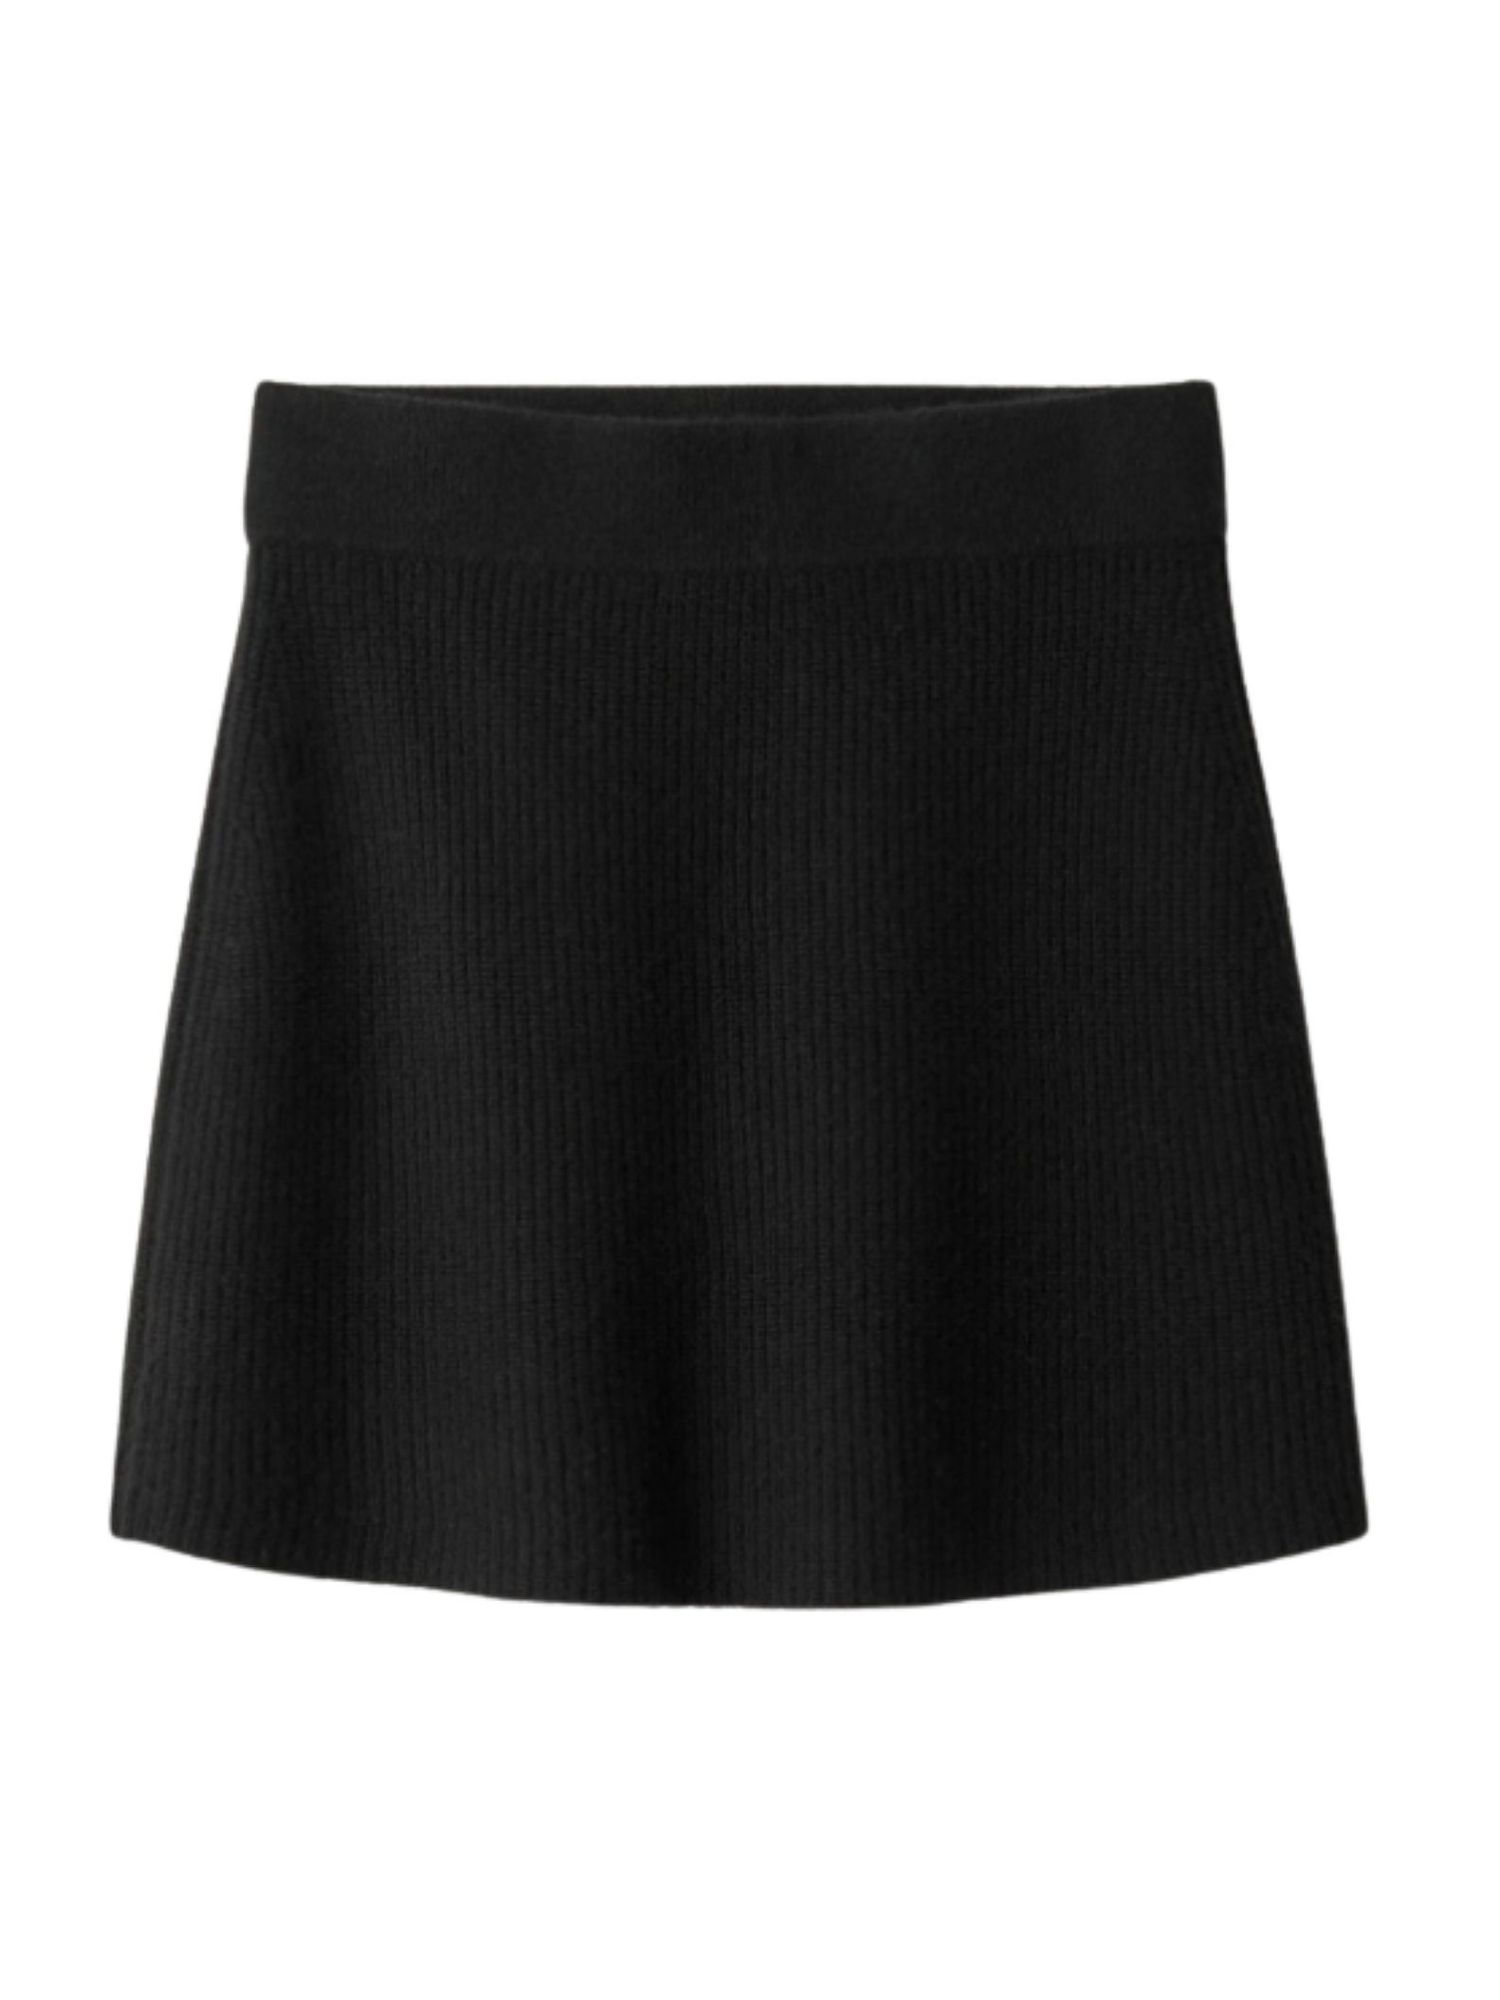 Soft Goat cashmere mini skirt black